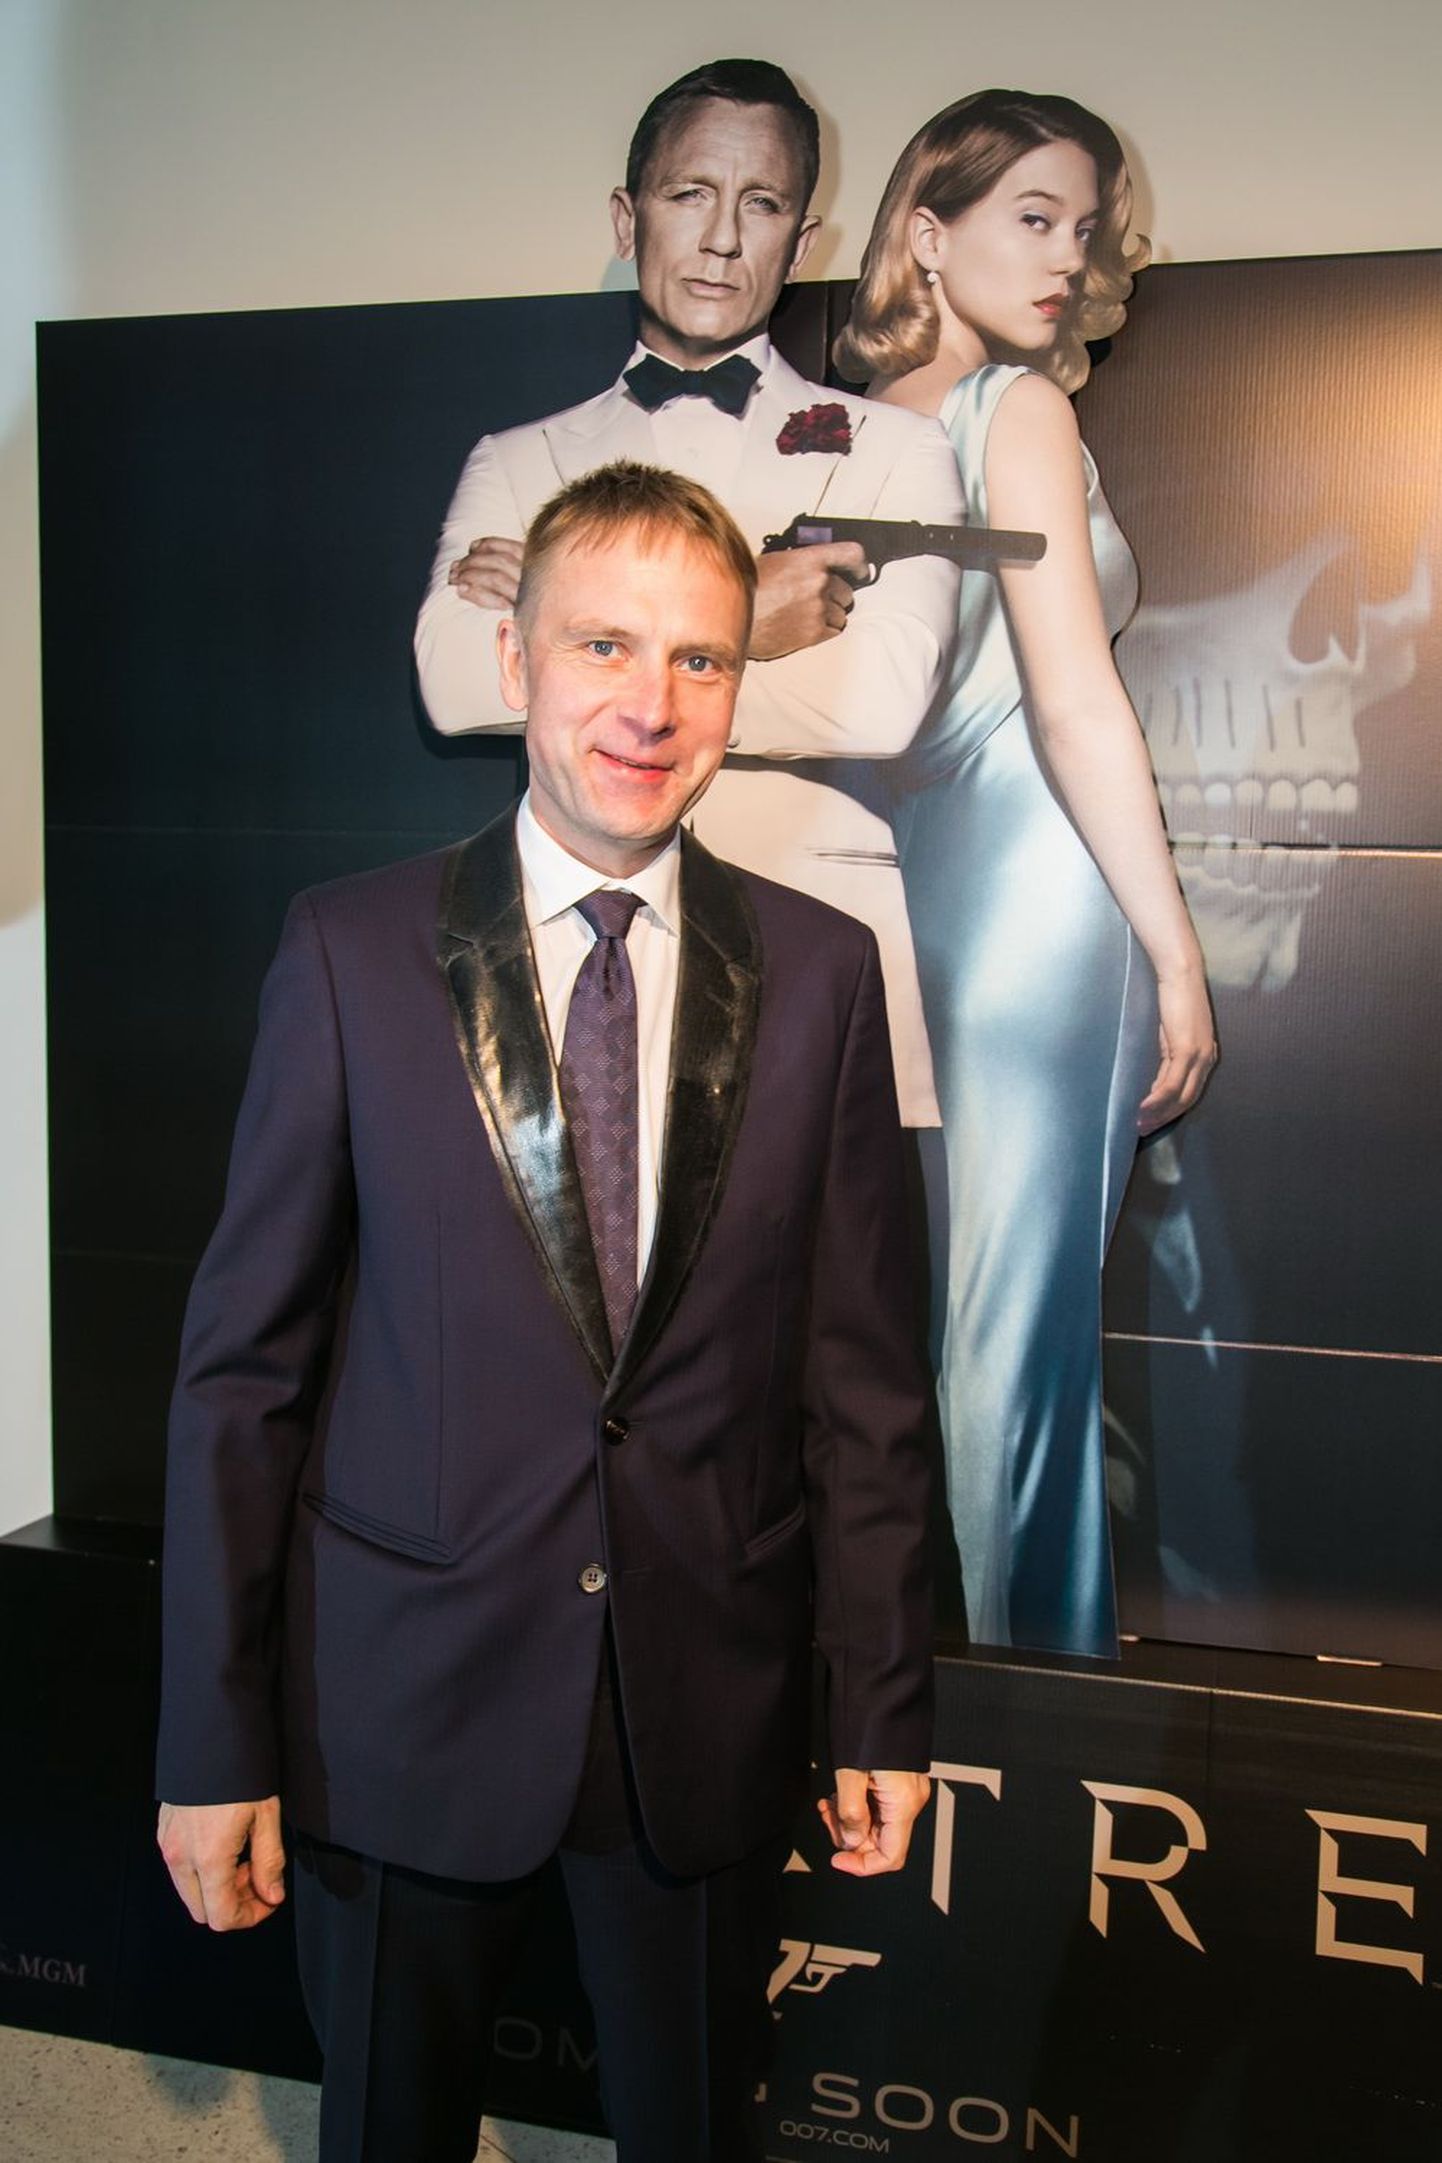 James Bond 007 SPECTRE Eesti esilinastus IMAX Kosmoses. Eesti oma superagent Eerik Niiles Kross